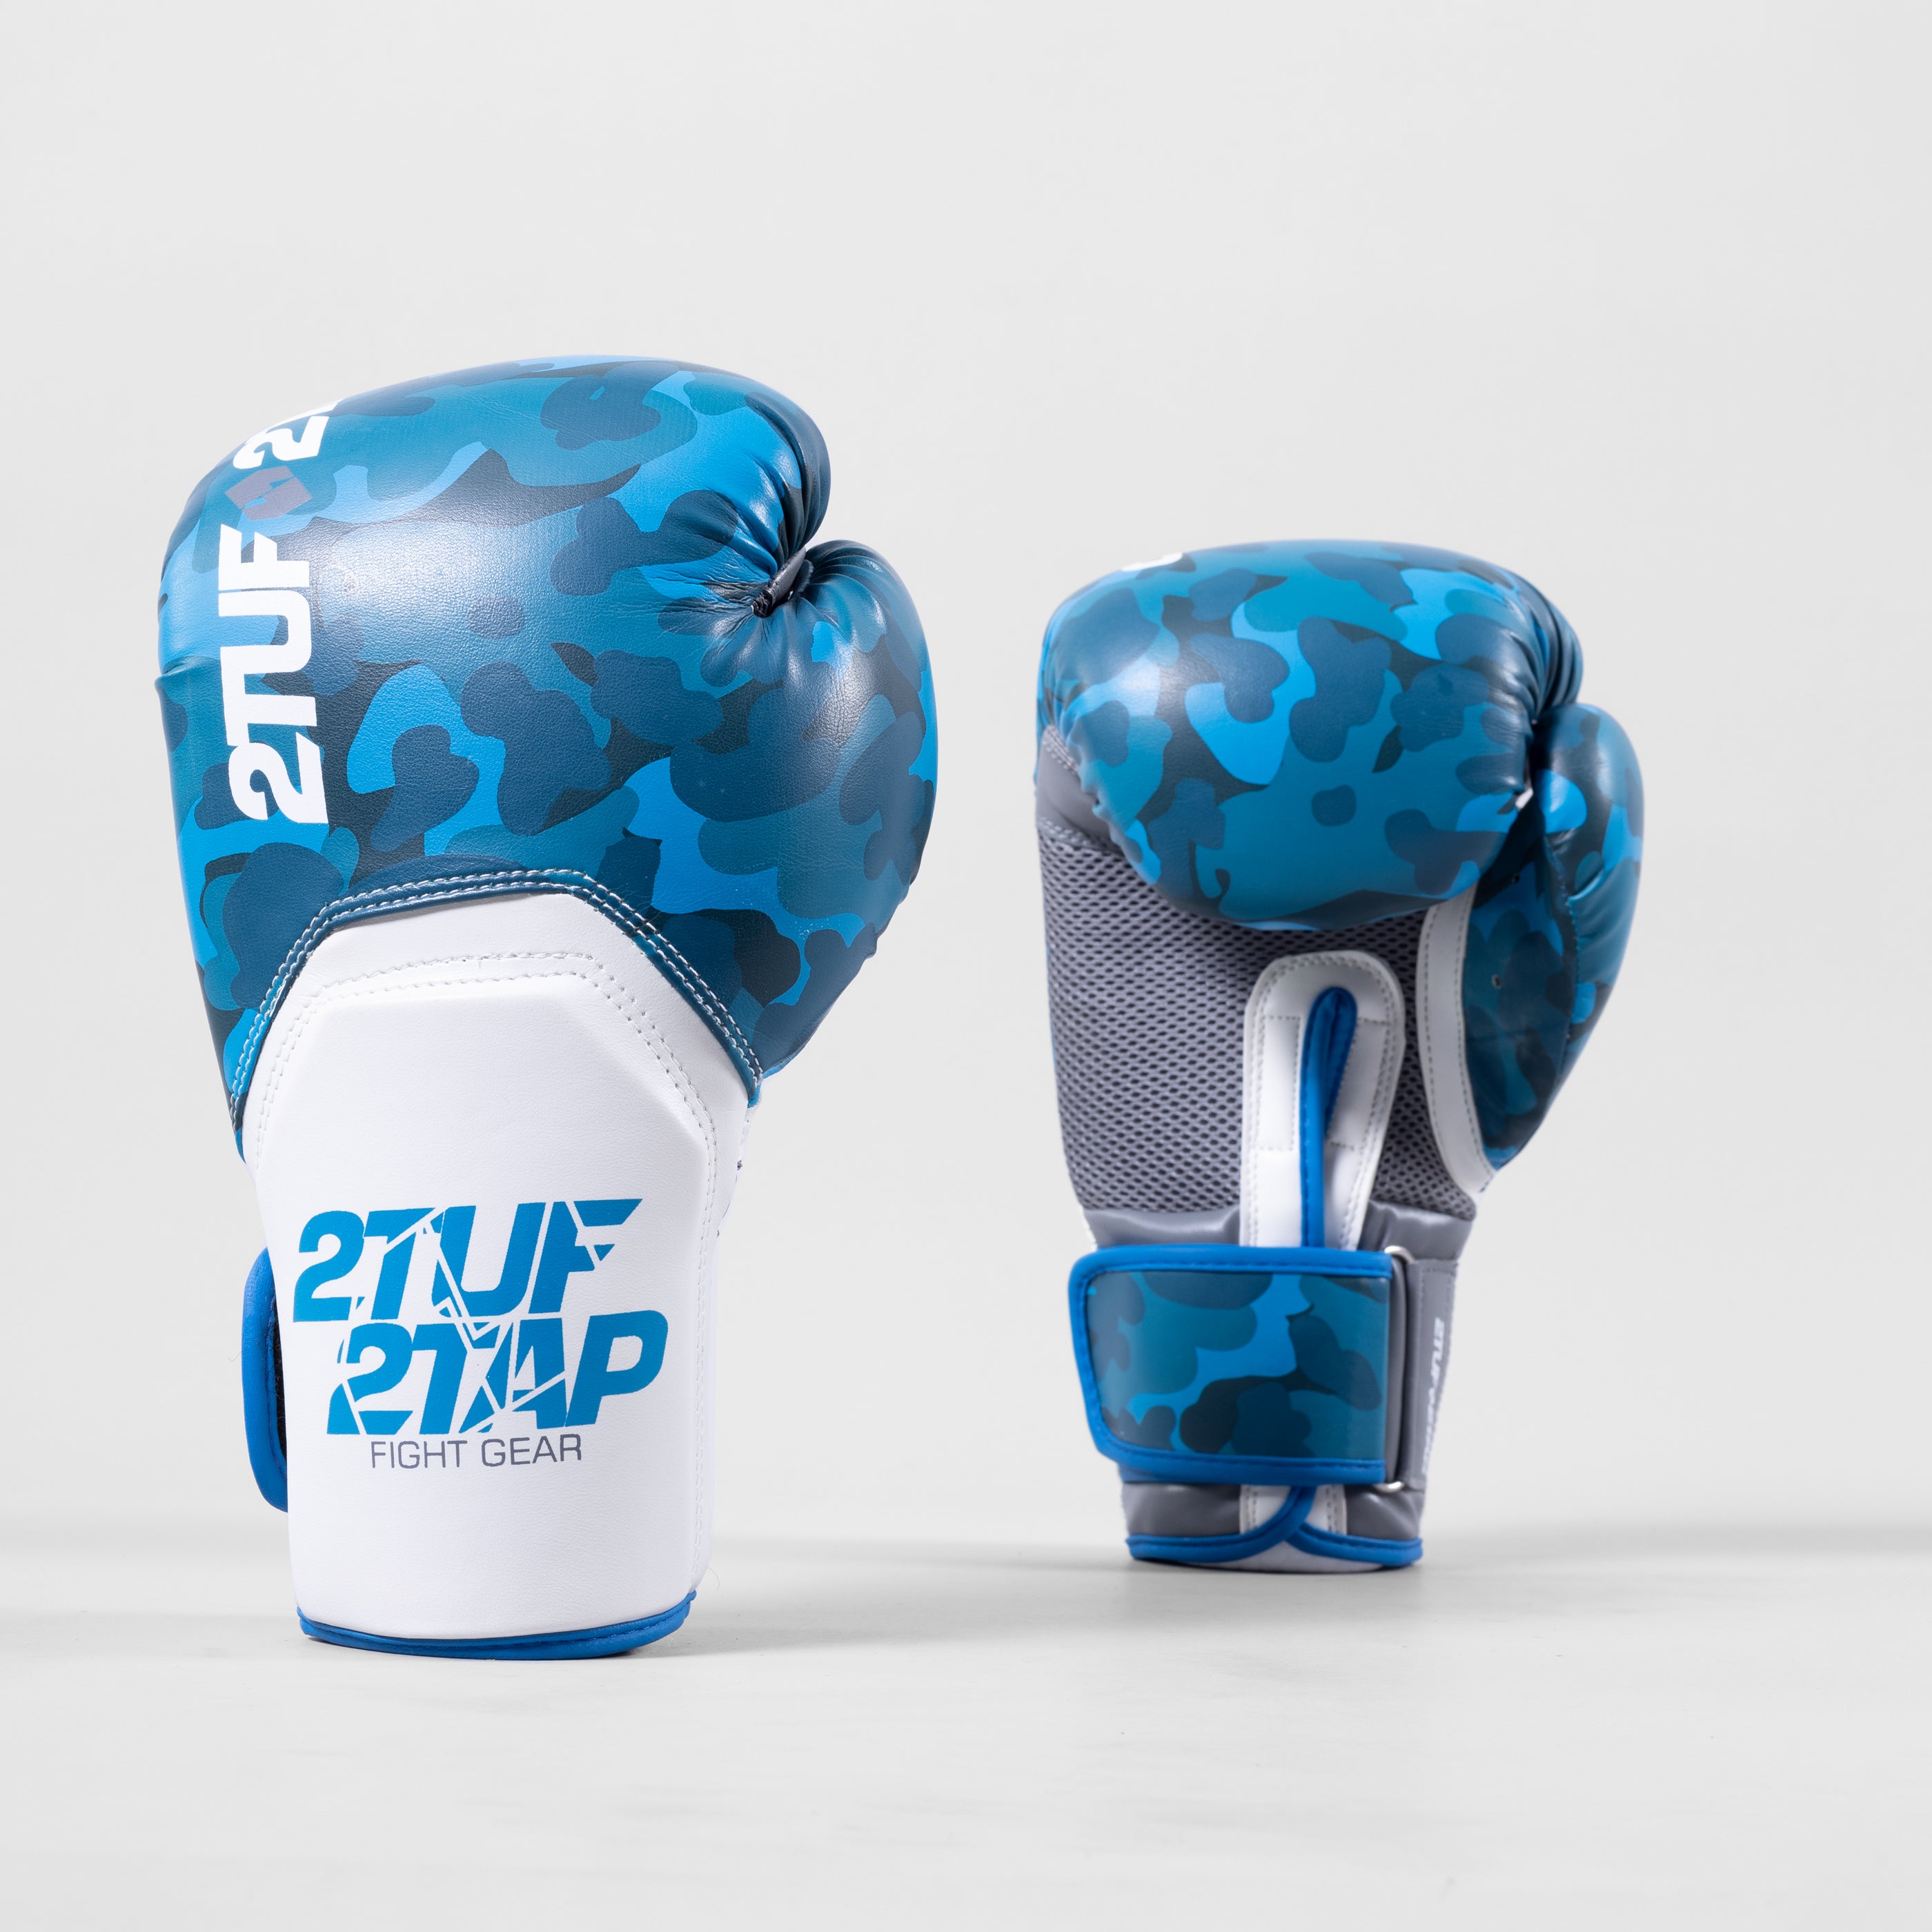 'Camo Elite' Boxing Gloves - Blue/White 2TUF2TAP